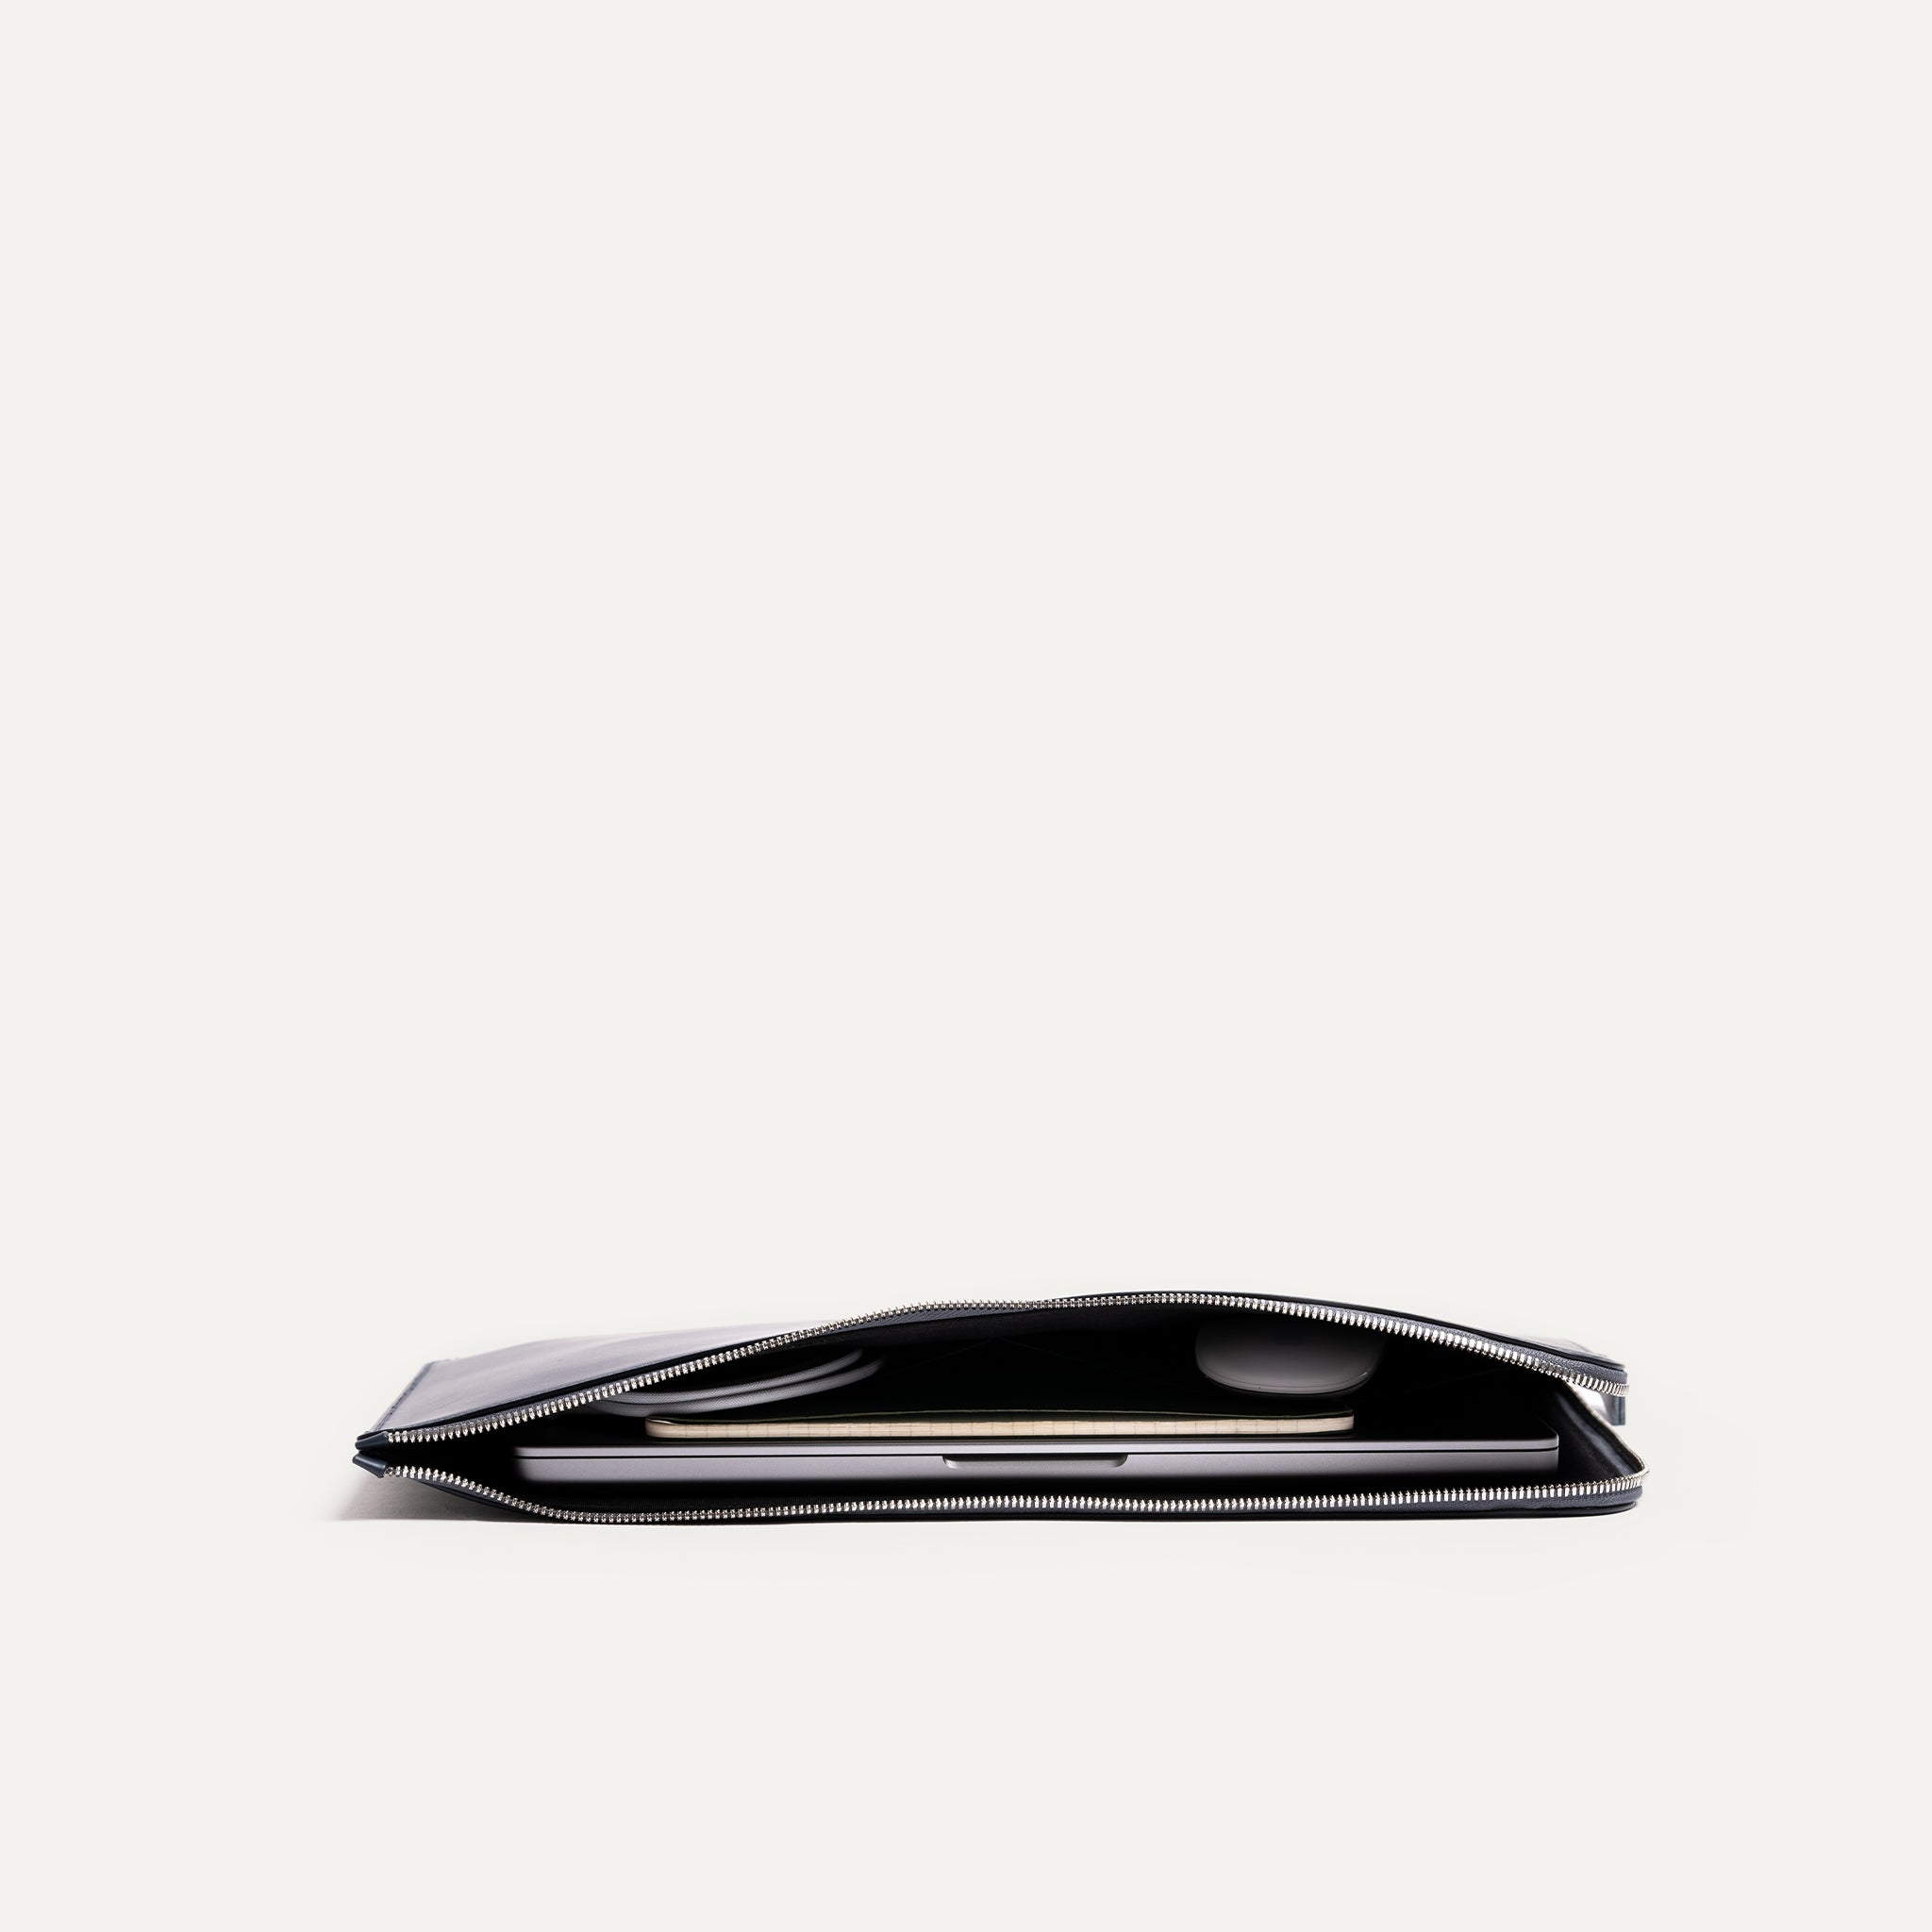  En termes de praticité, cette pochette pour ordi portable à une grande ouverture zippée qui vous séduira par son accessibilité. Les deux poches intérieures (16 cm x 17 cm) sont parfaites pour ranger votre téléphone portable, vos câbles, ou encore votre souris d’ordinateur.